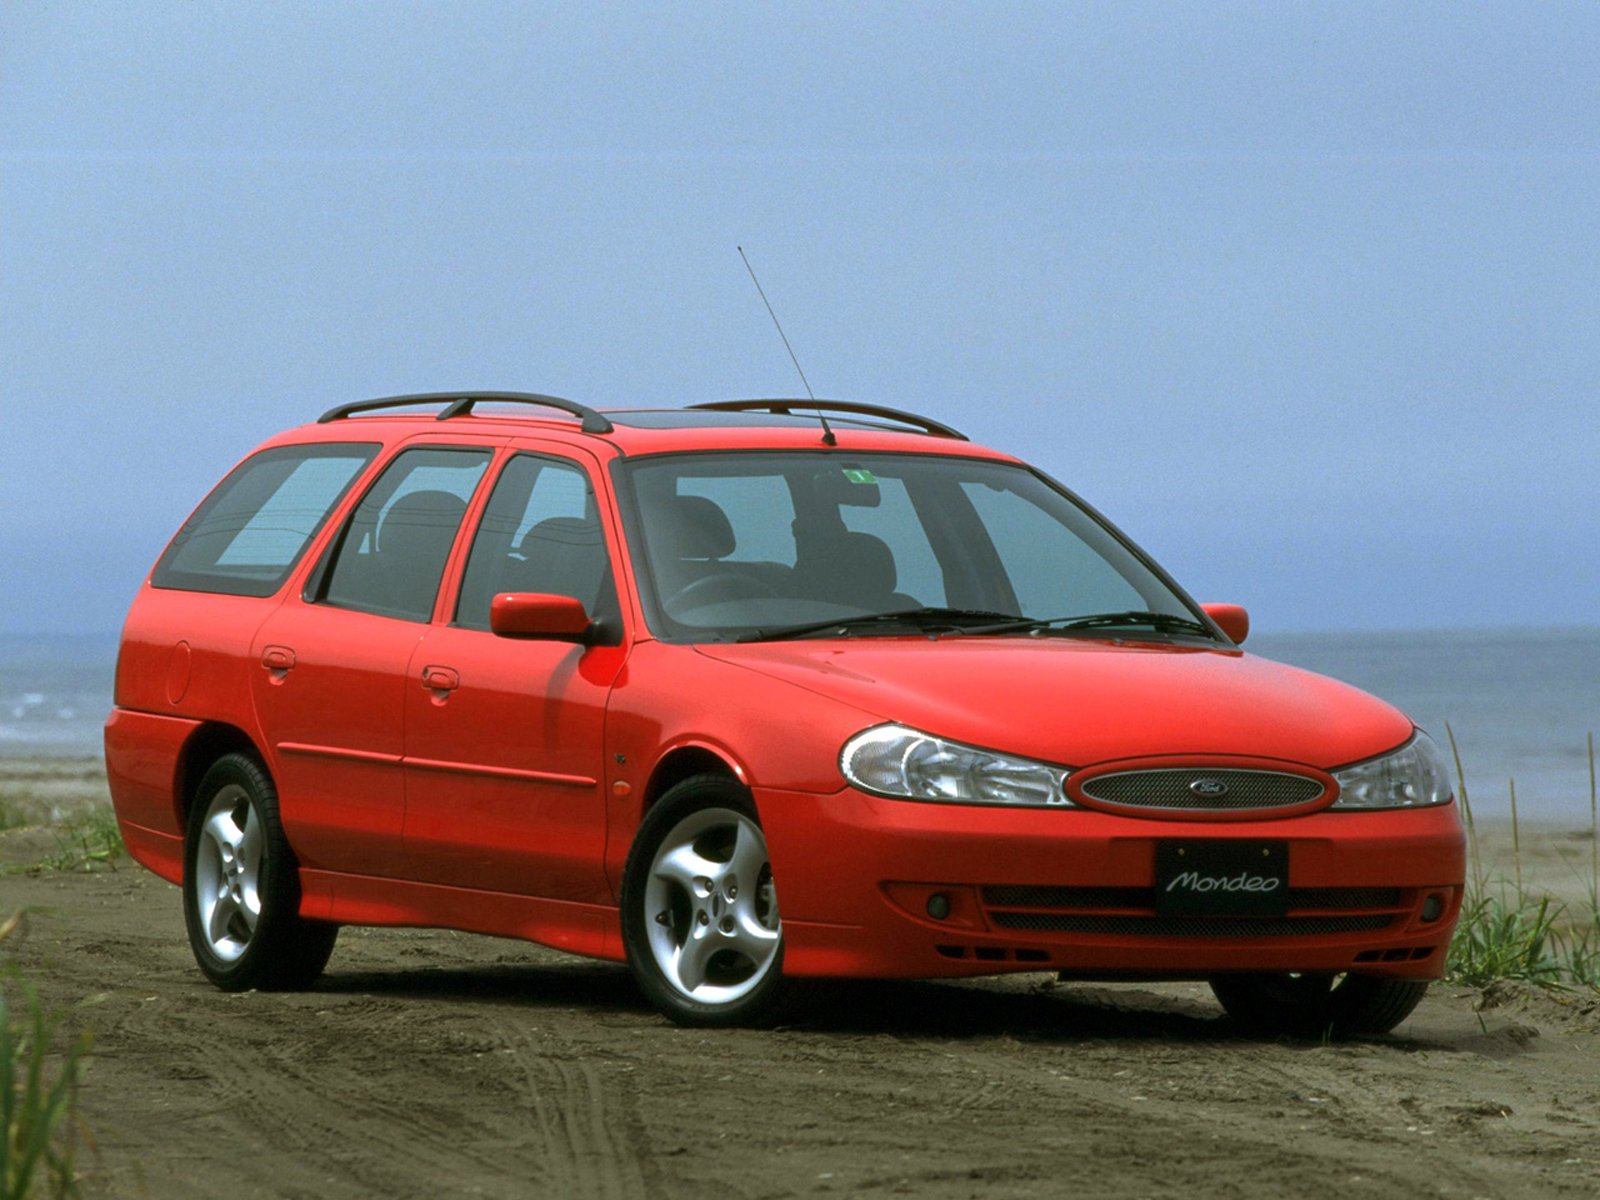 Мондео 2 универсал дизель. Ford Mondeo 1996 универсал. Форд Мондео 2 универсал. Ford Mondeo 2000 универсал. Ford Mondeo 2 Wagon.